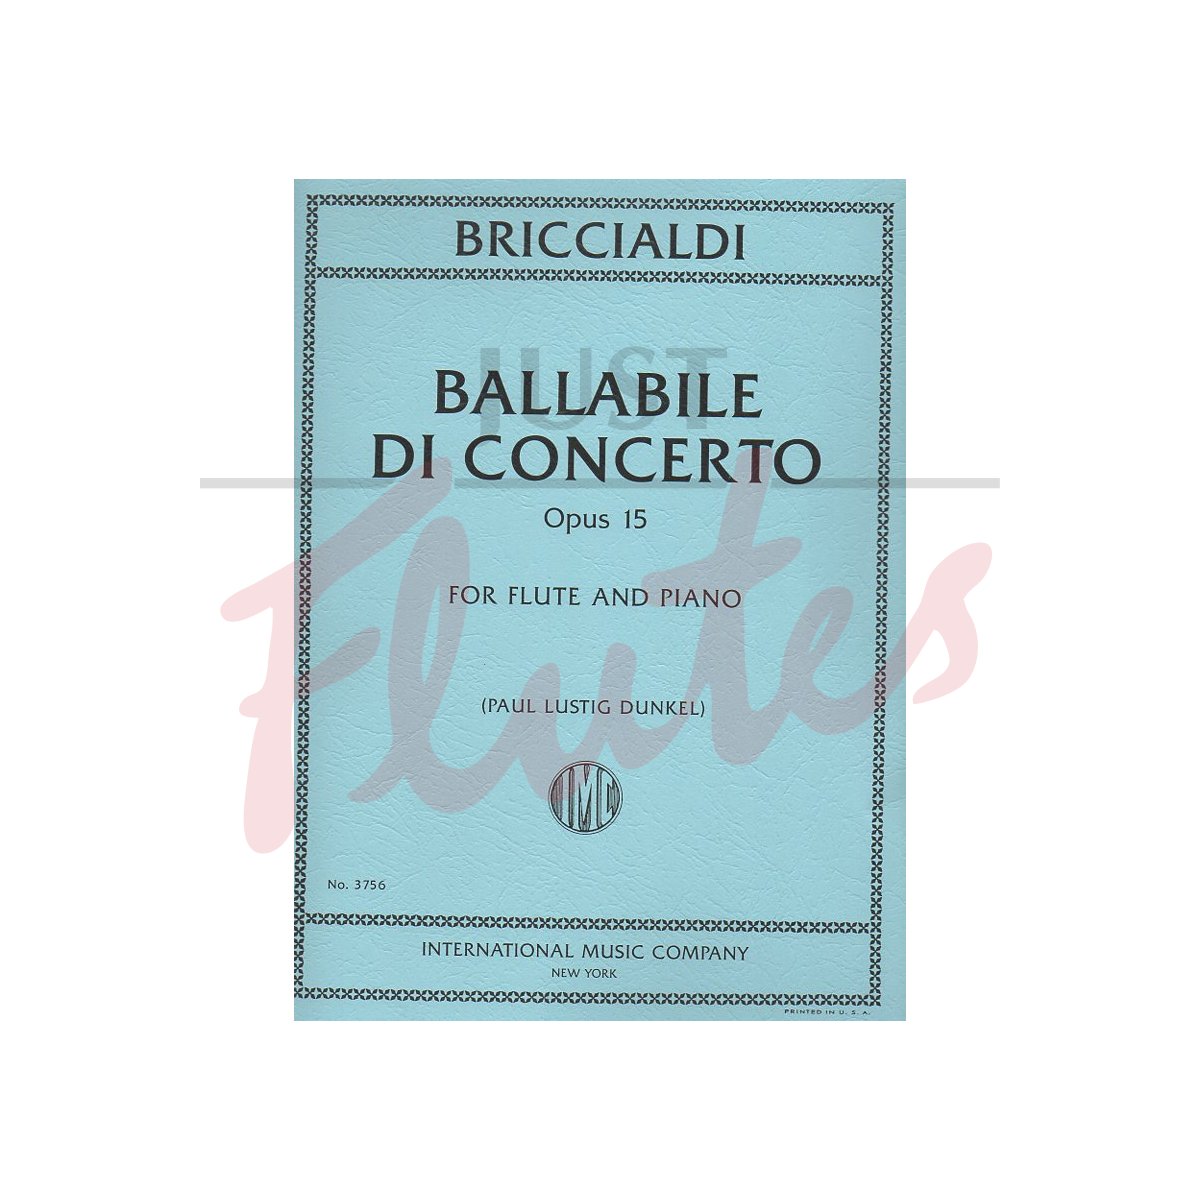 Ballabile di Concerto arranged for Flute and Piano